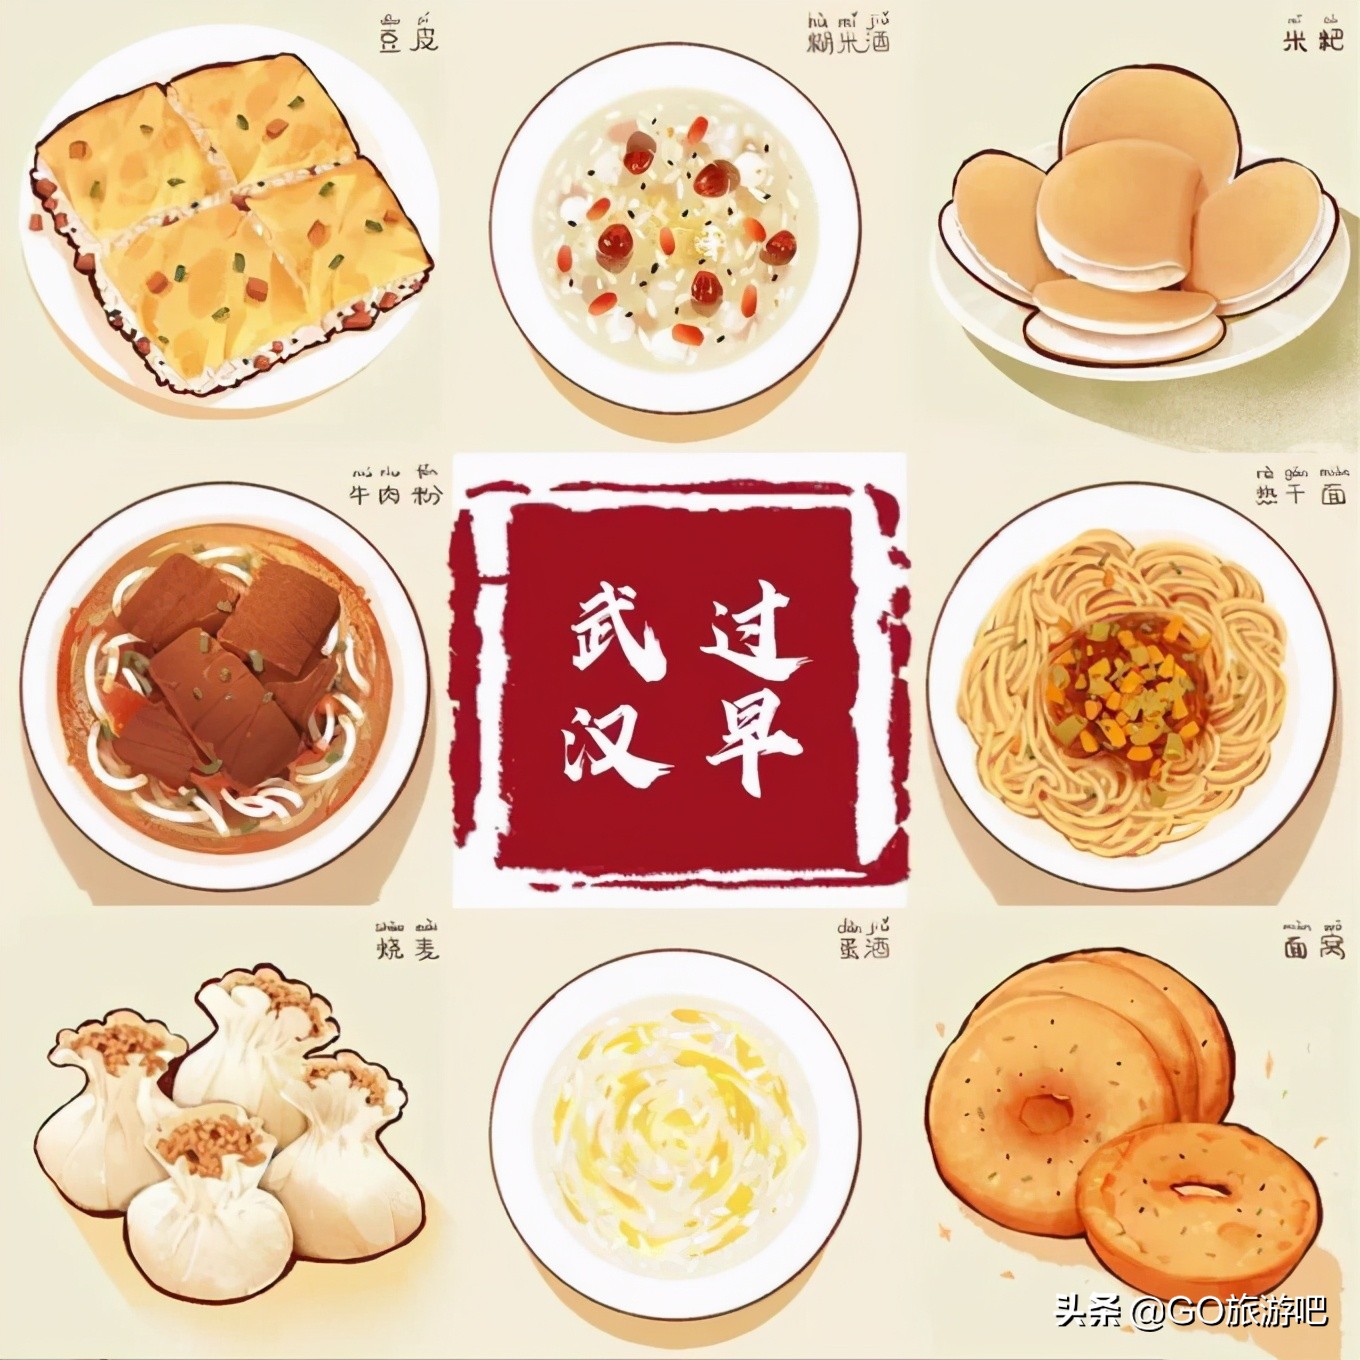 来武汉旅游一定要体验一次武汉的早餐文化——“过早”